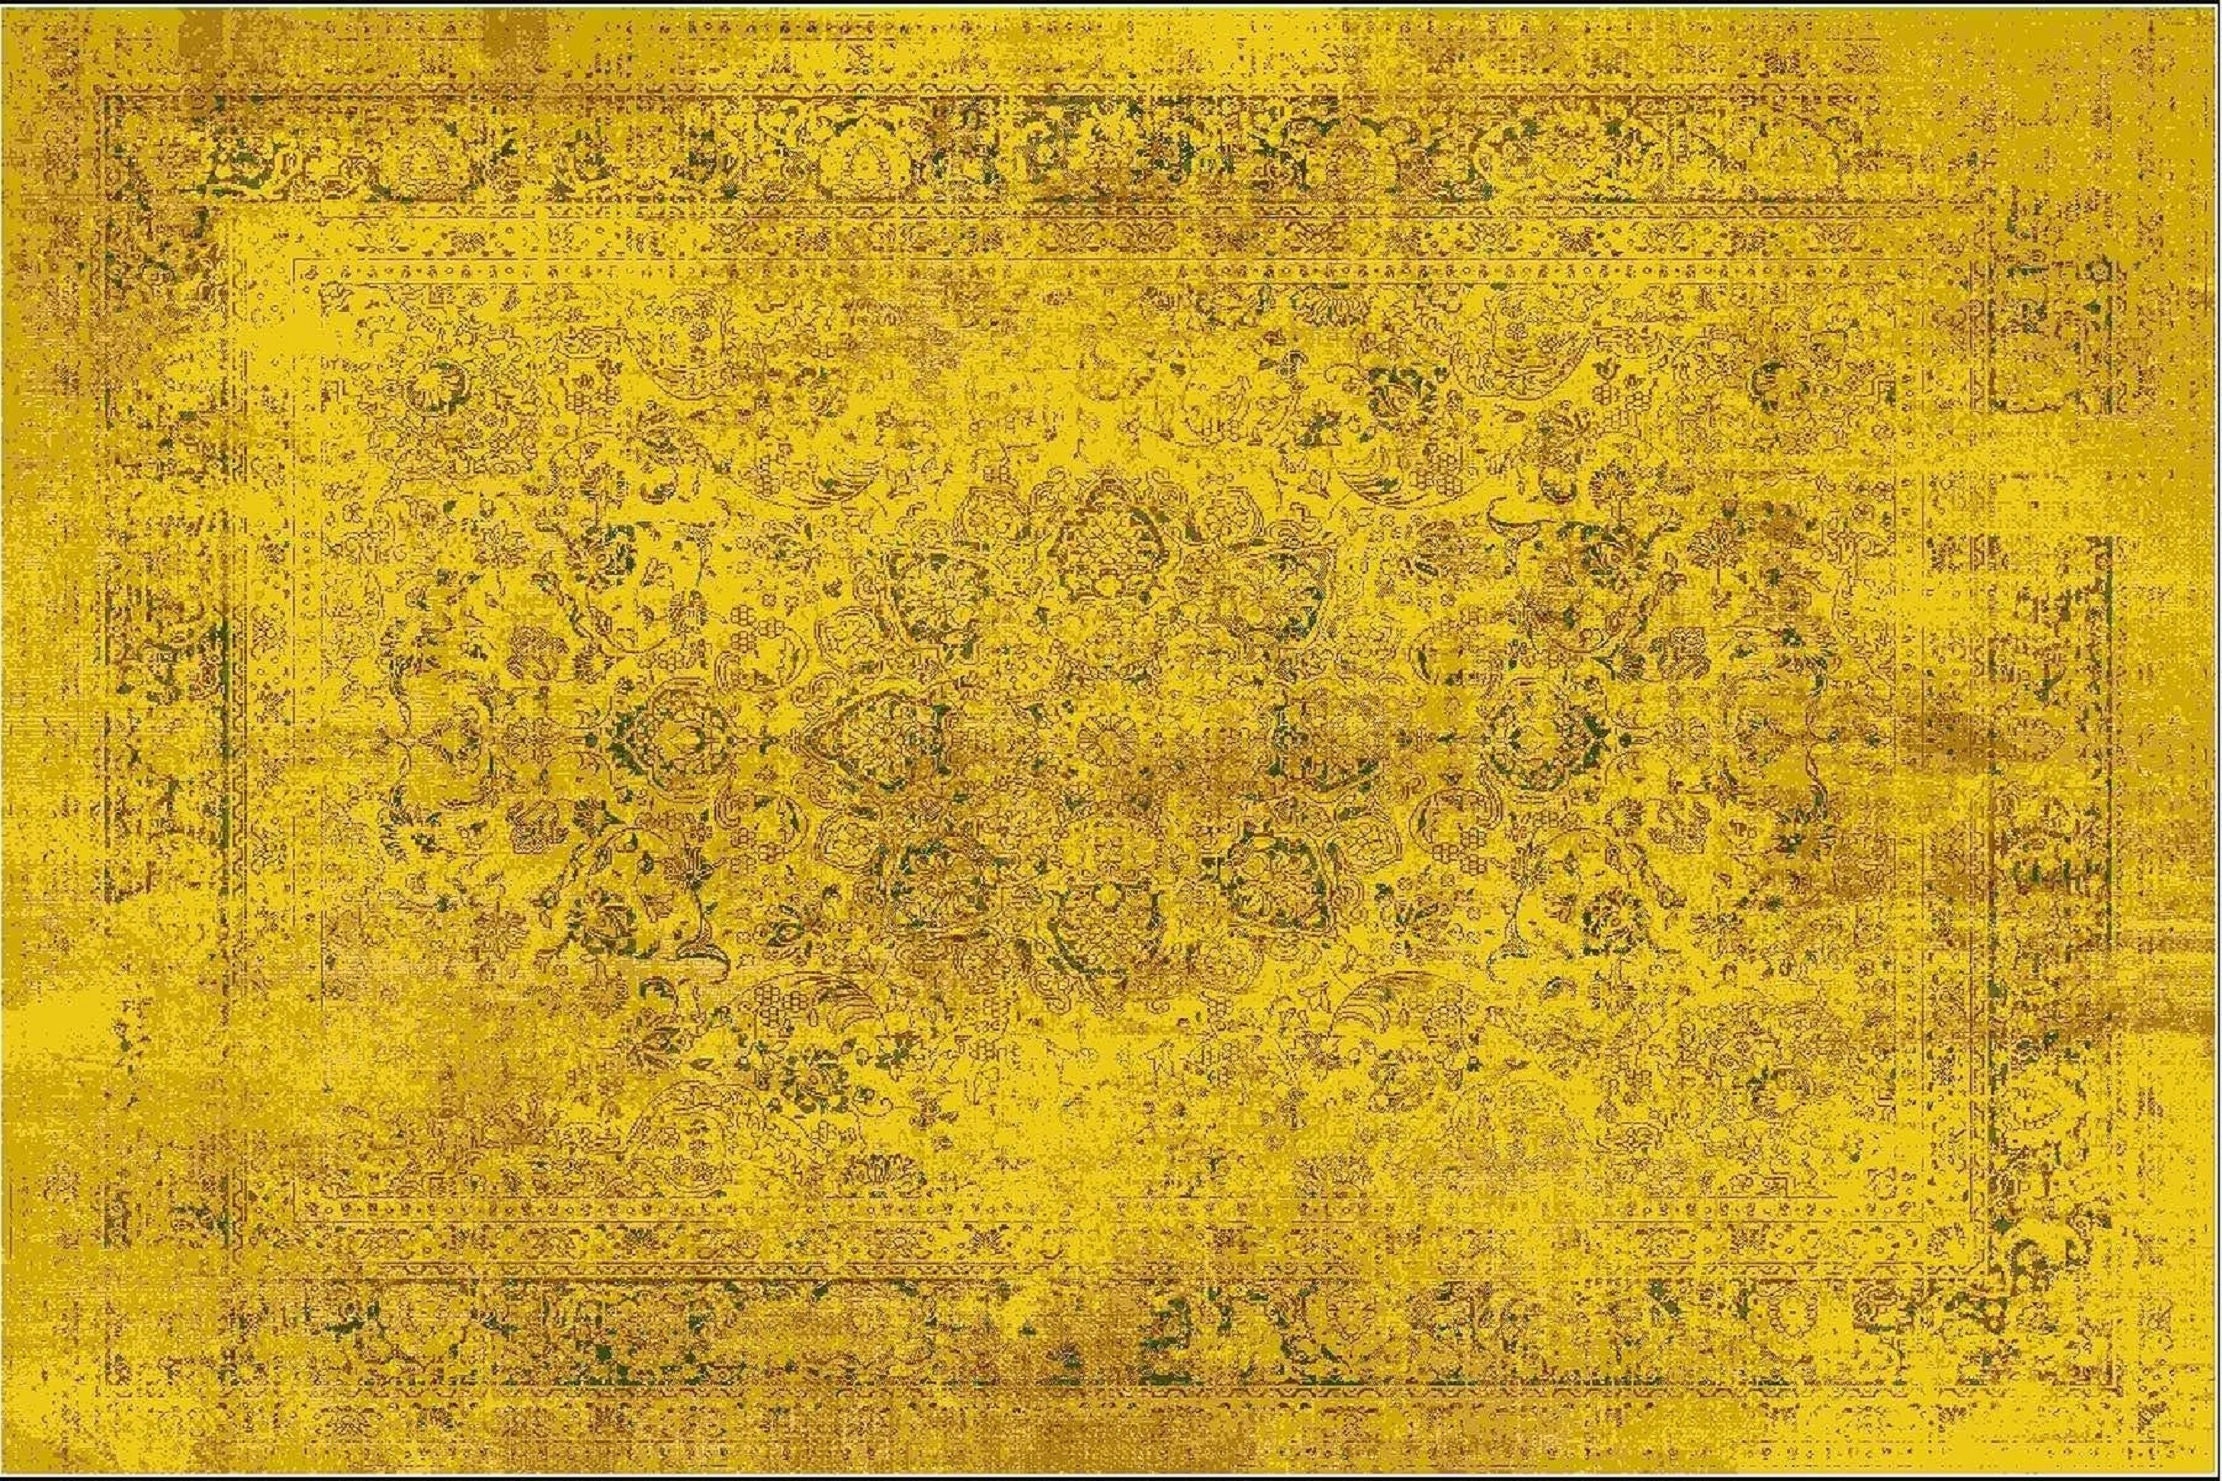 Türkischer Teppich gelb, Vintage Stil Mid Century Gelb Teppich